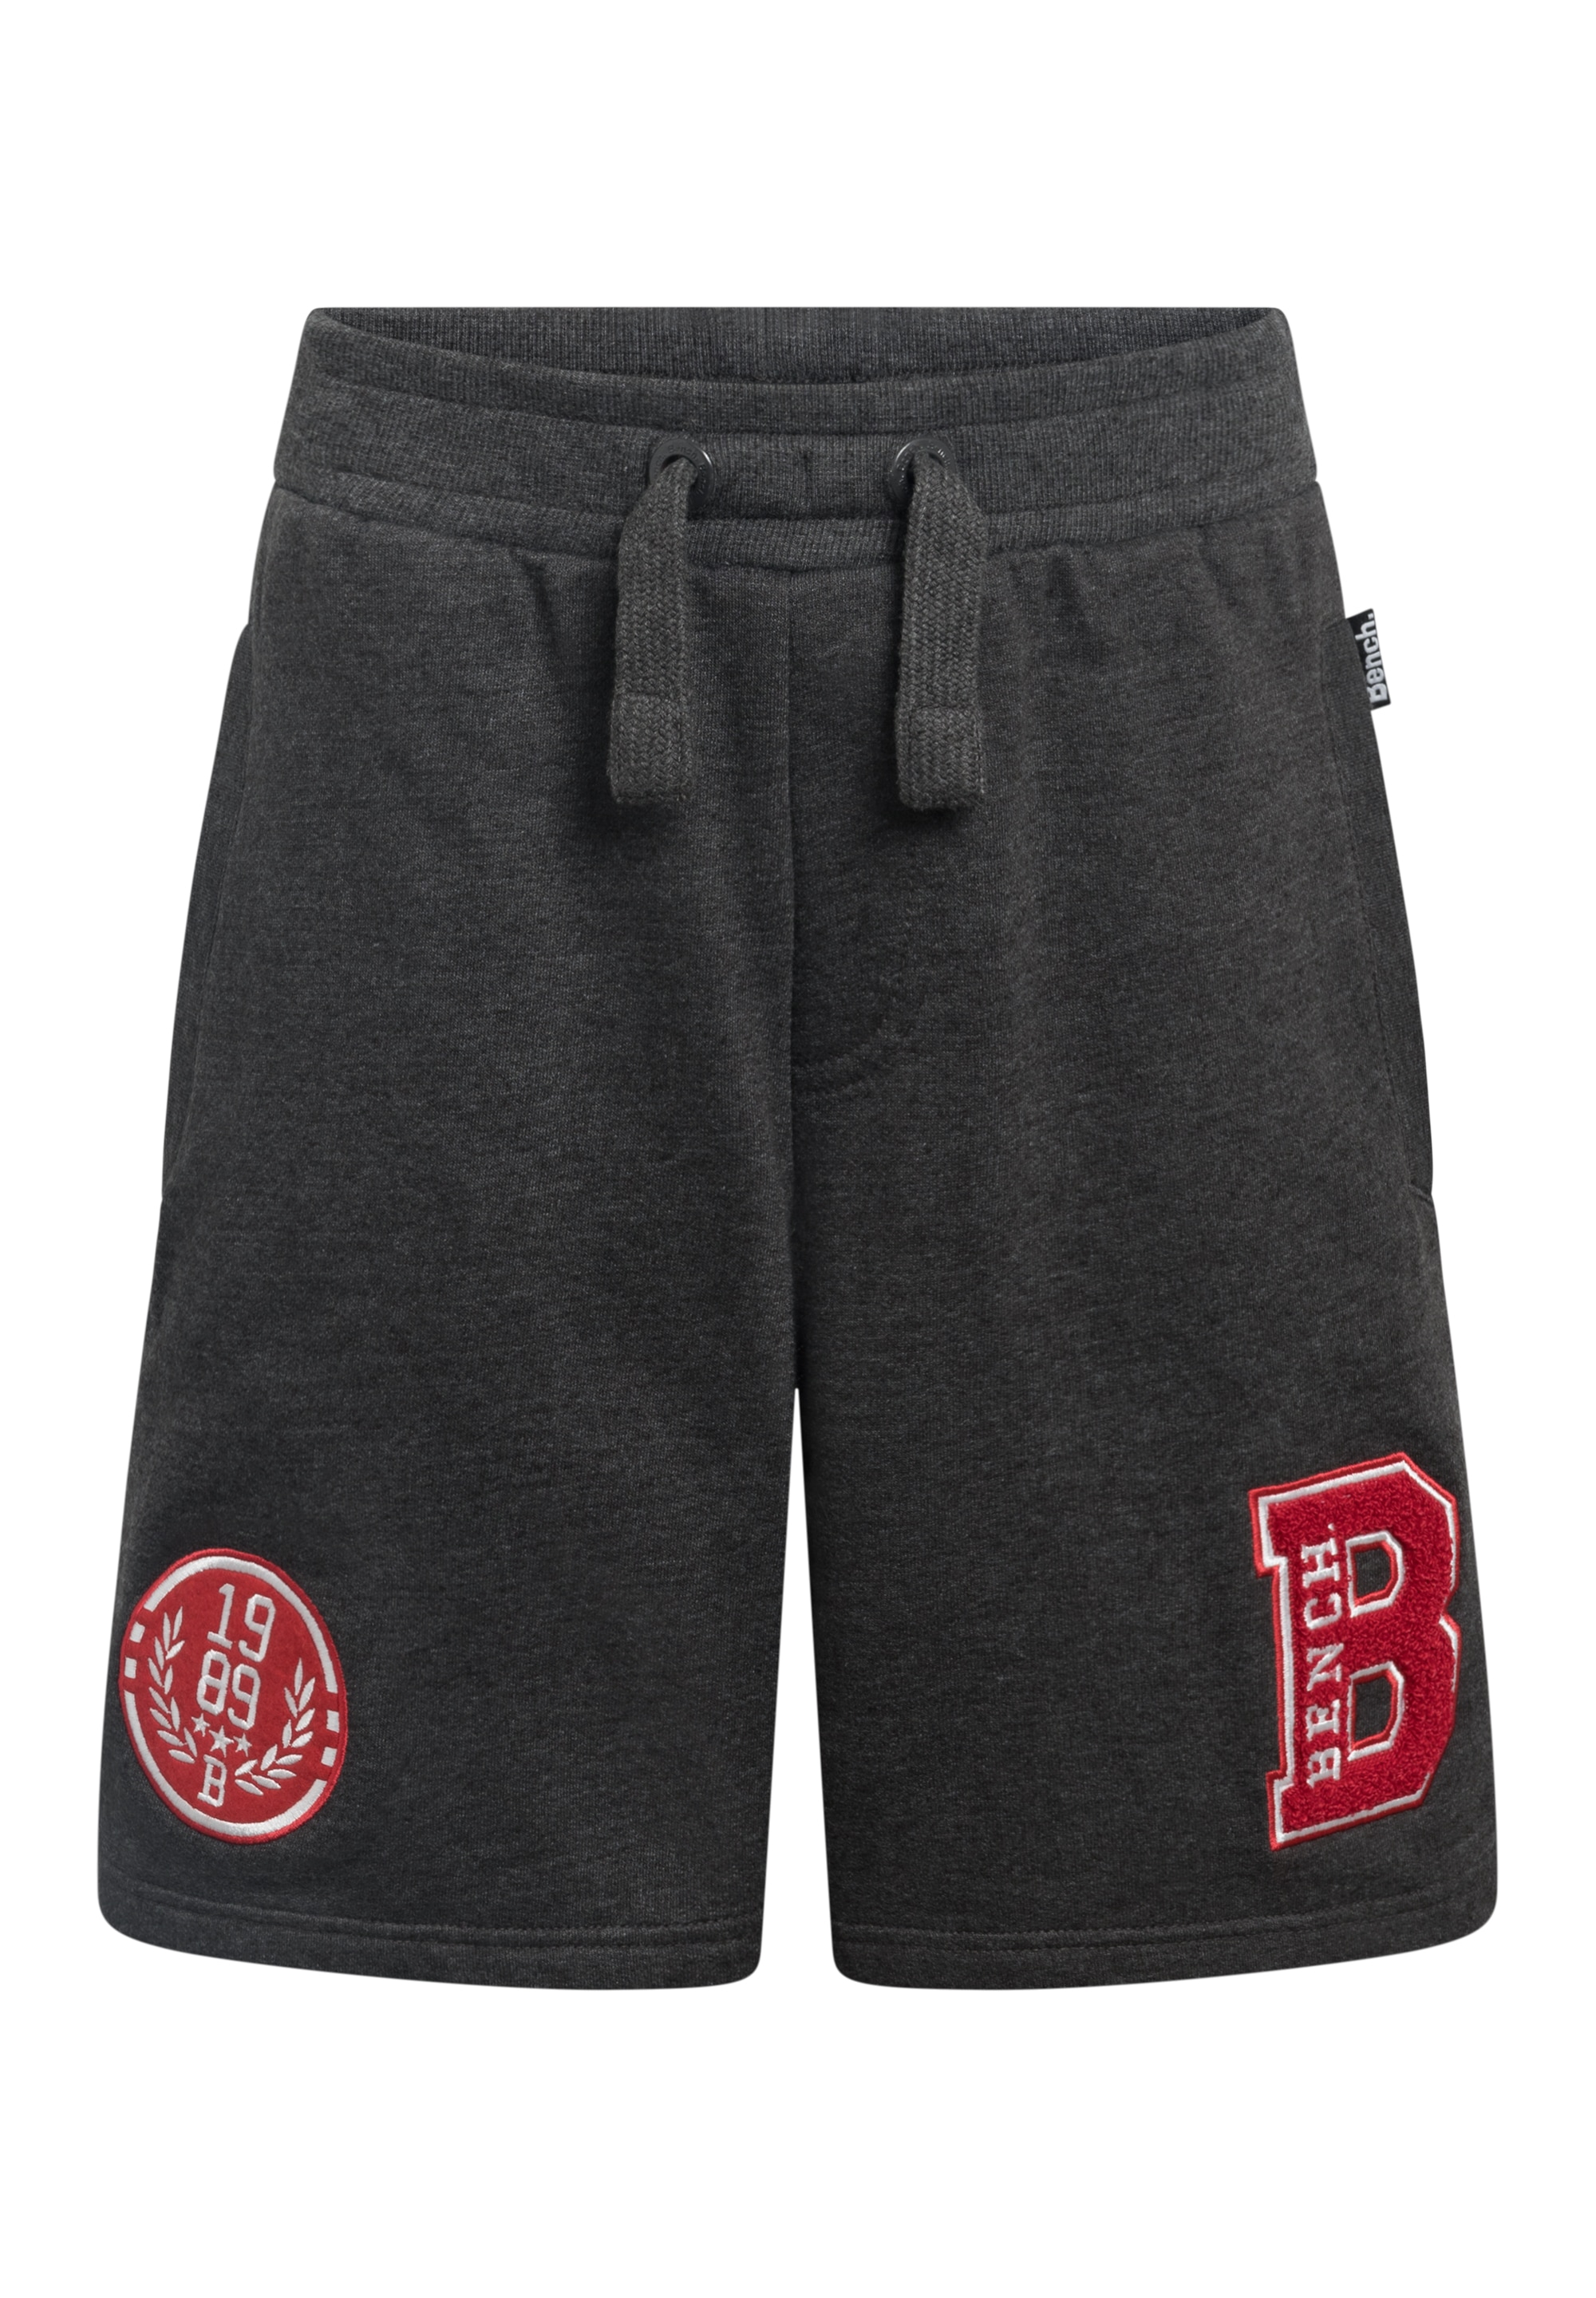 Bench. Shorts »Short RUBEL B«